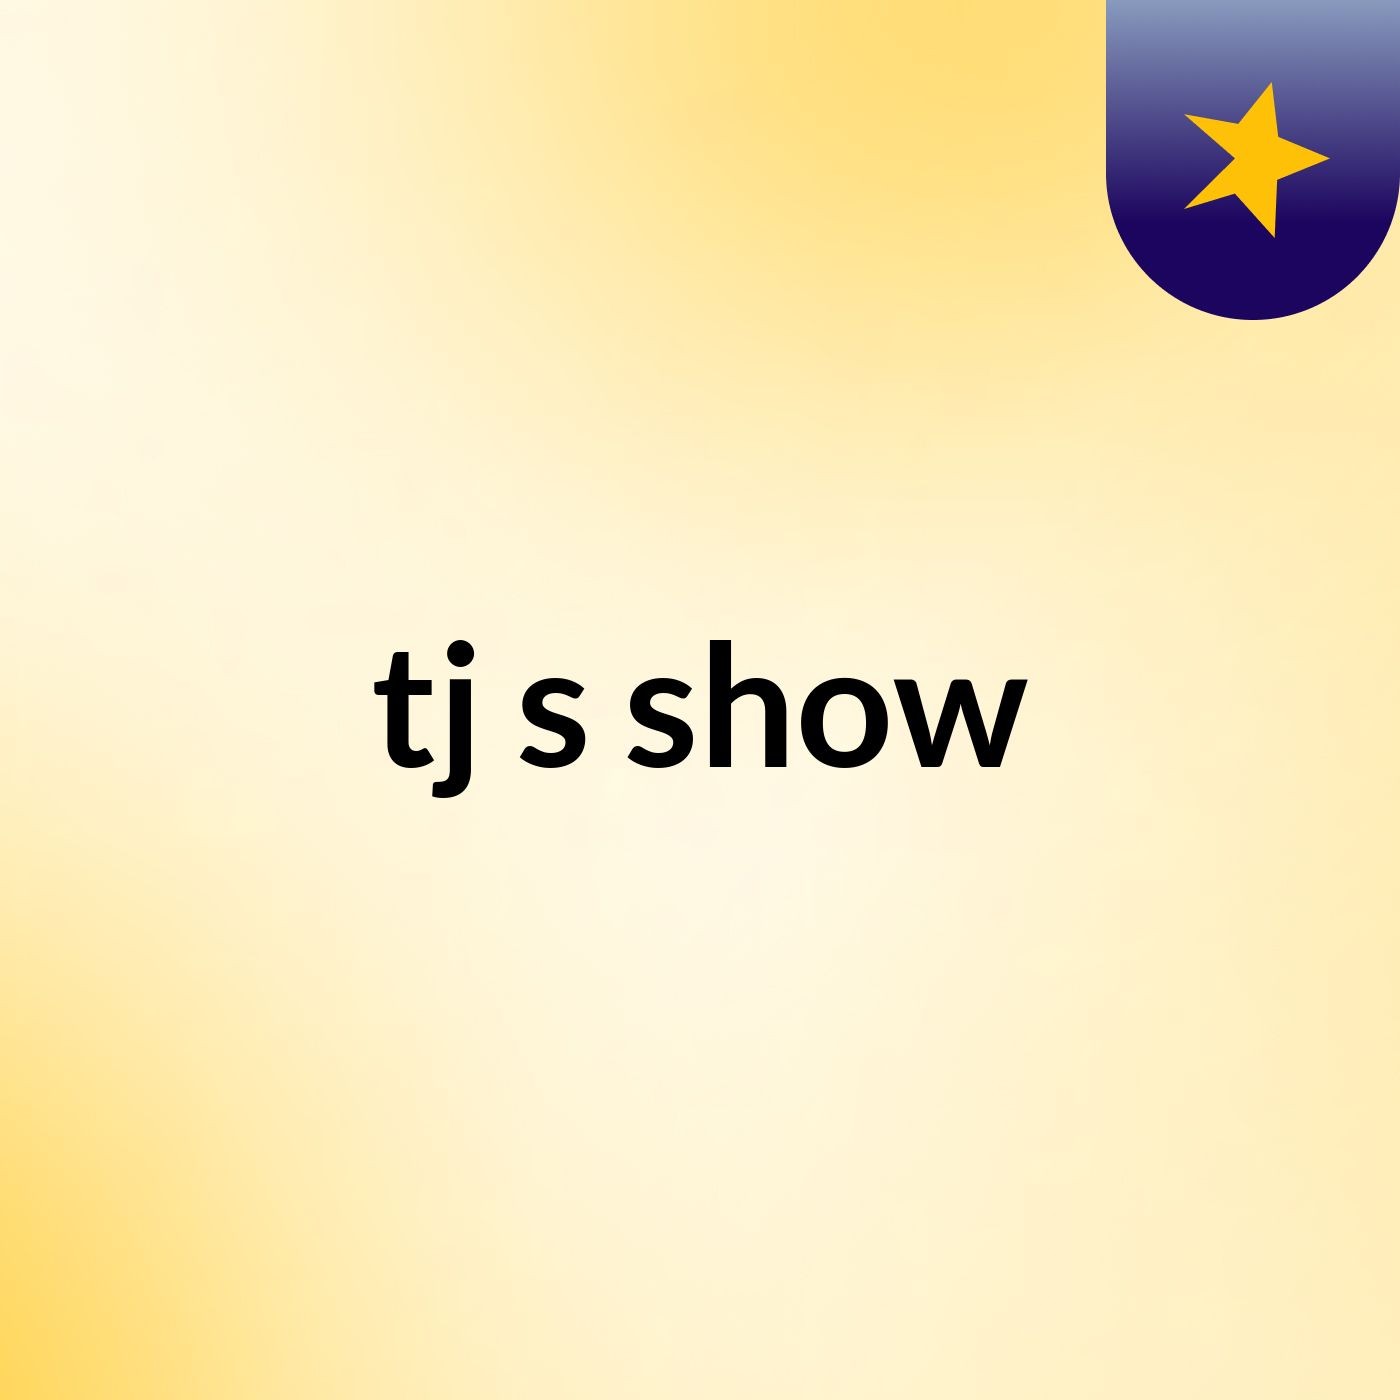 tj's show